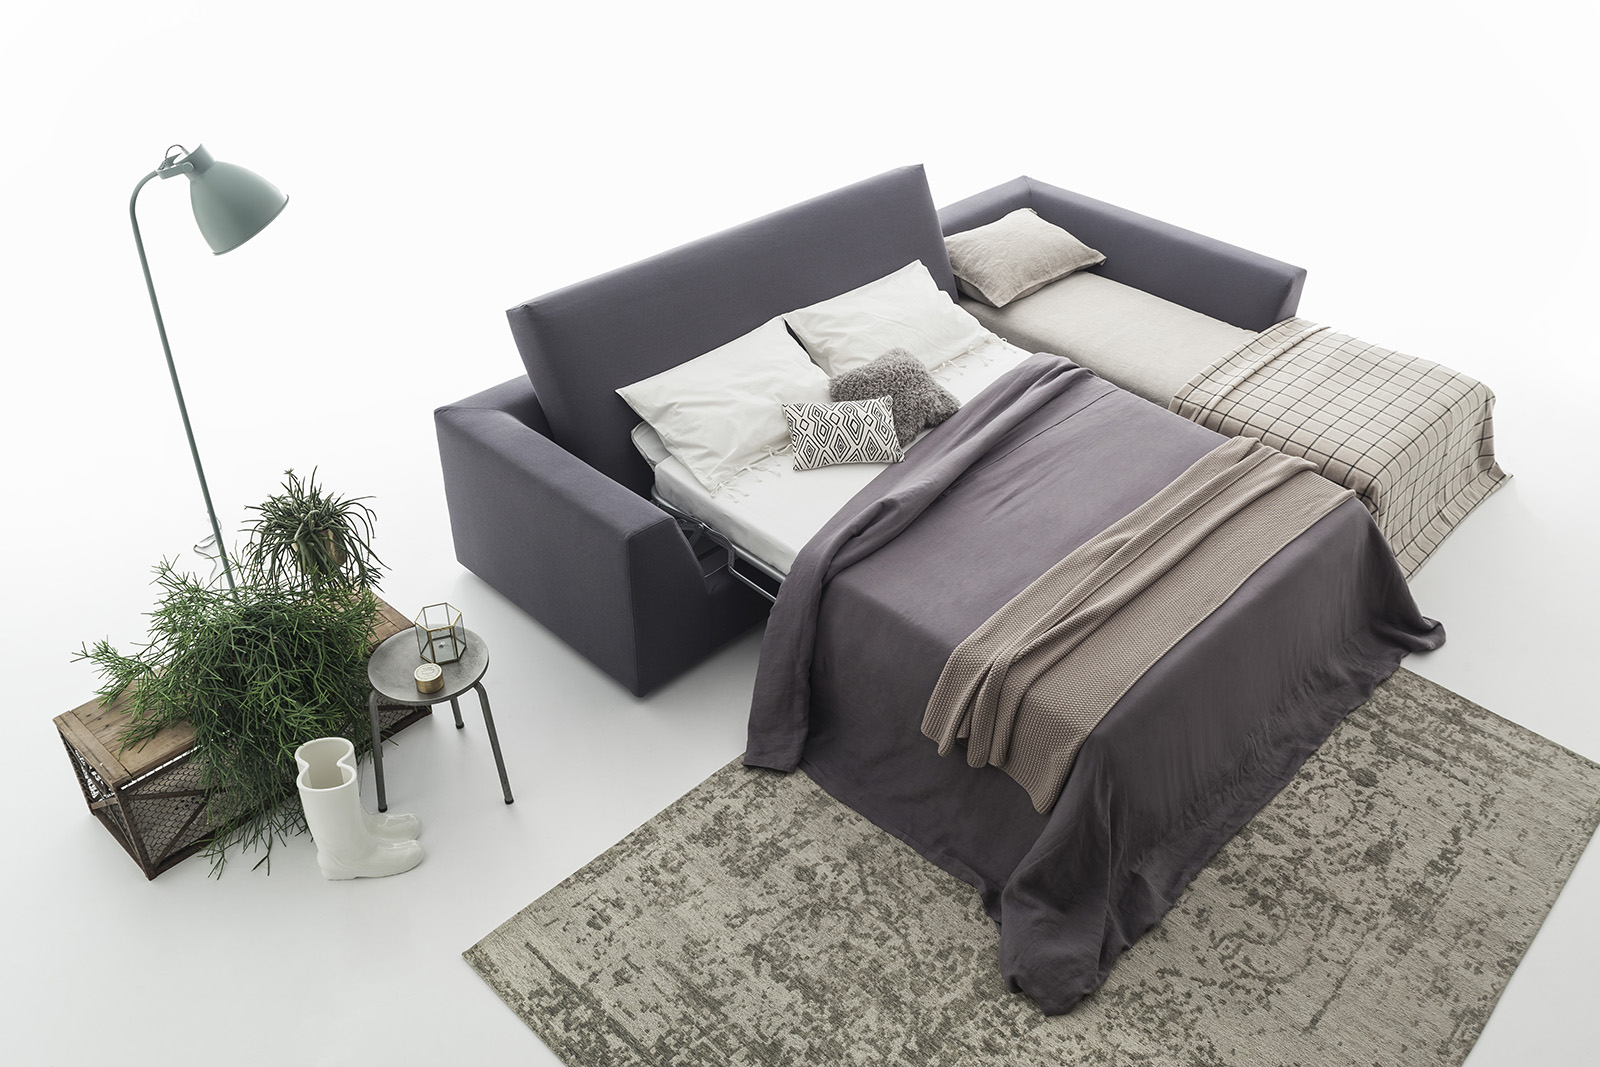 Divani letto Felis 2017: il nuovo modello Aston, da moderno divano a comodissimo letto